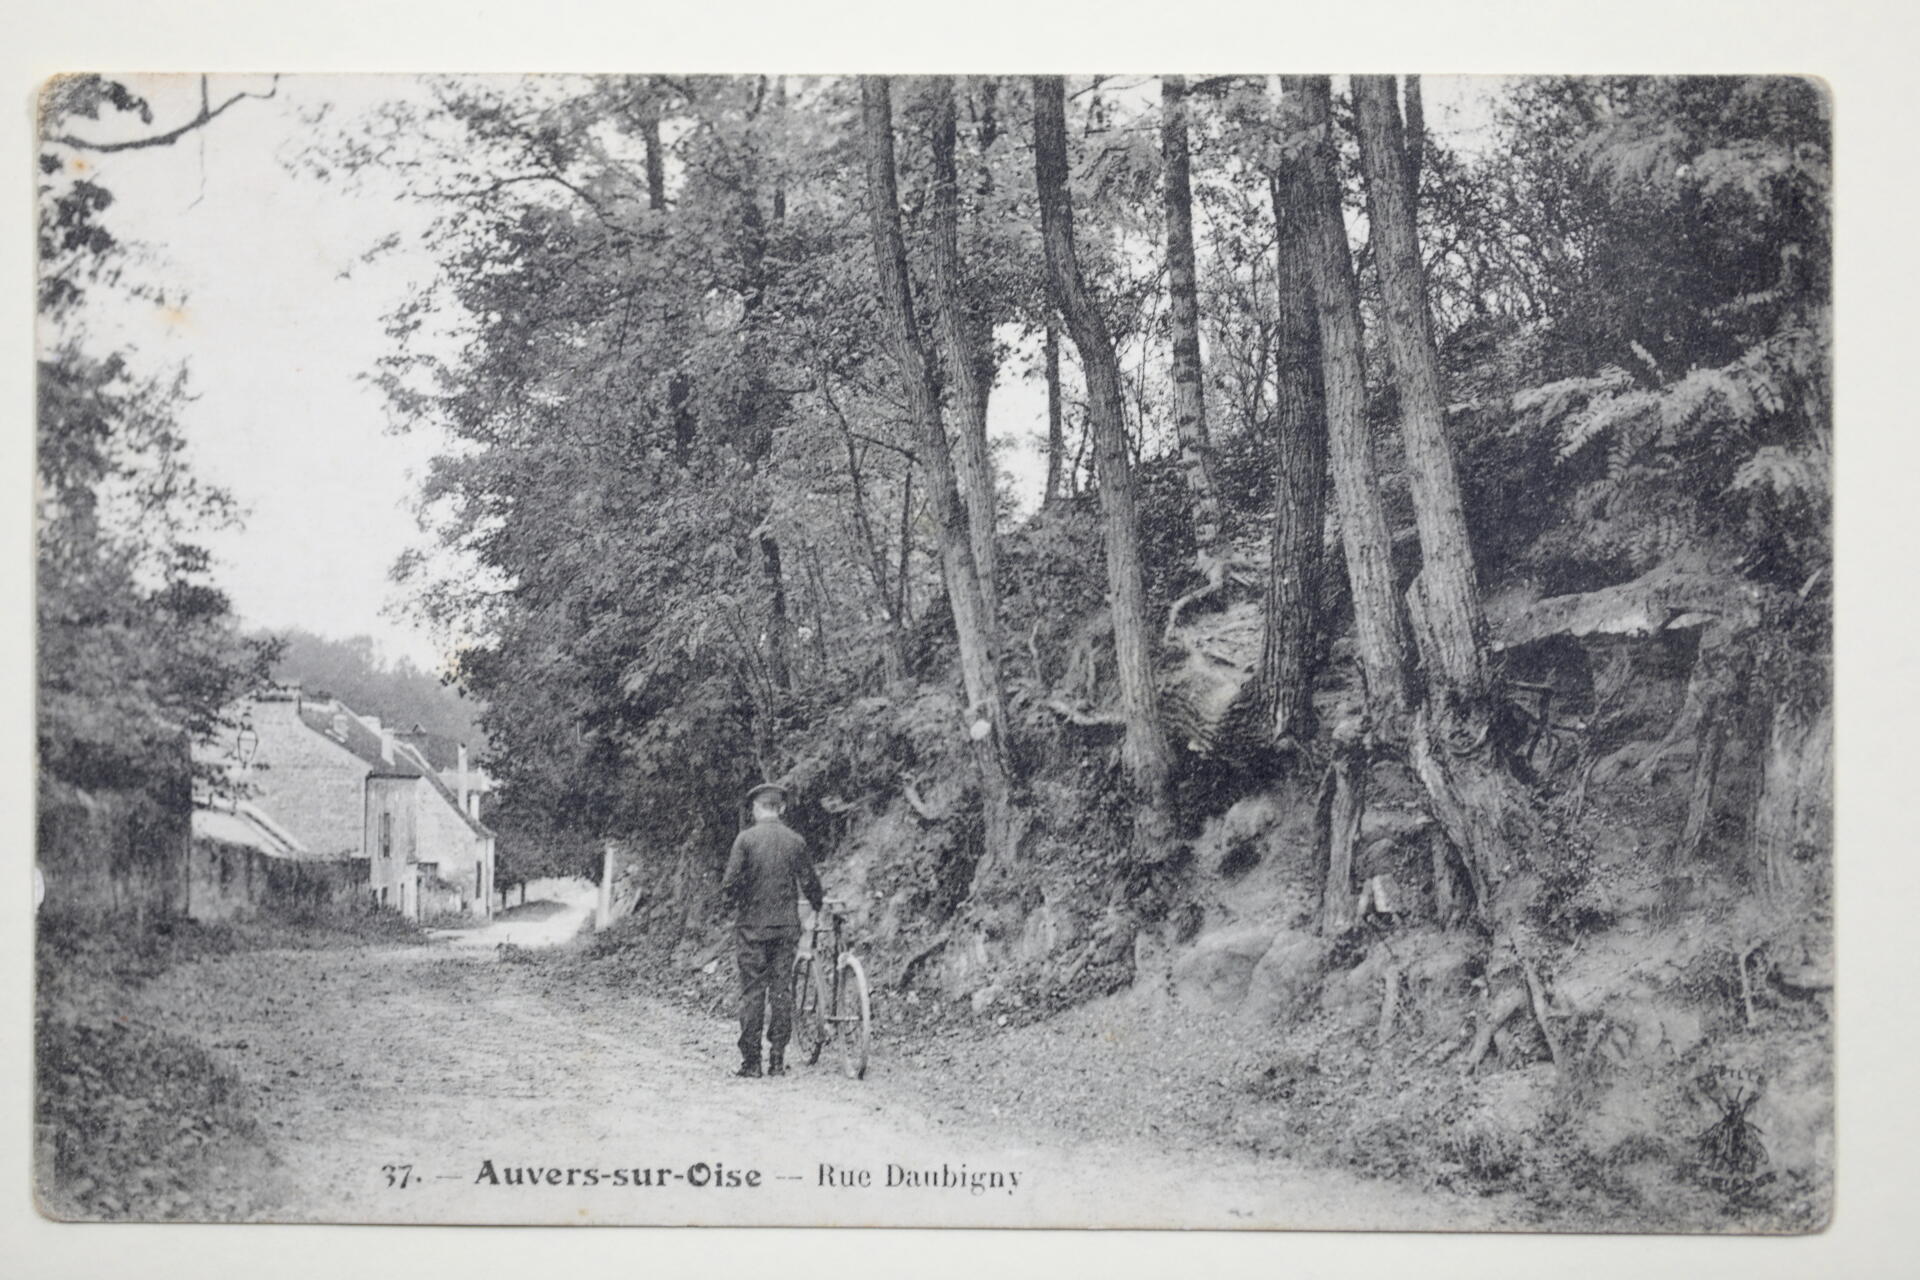 Carte postale, rue Daubigny, Auvers-sur-Oise, vers 1900-1910